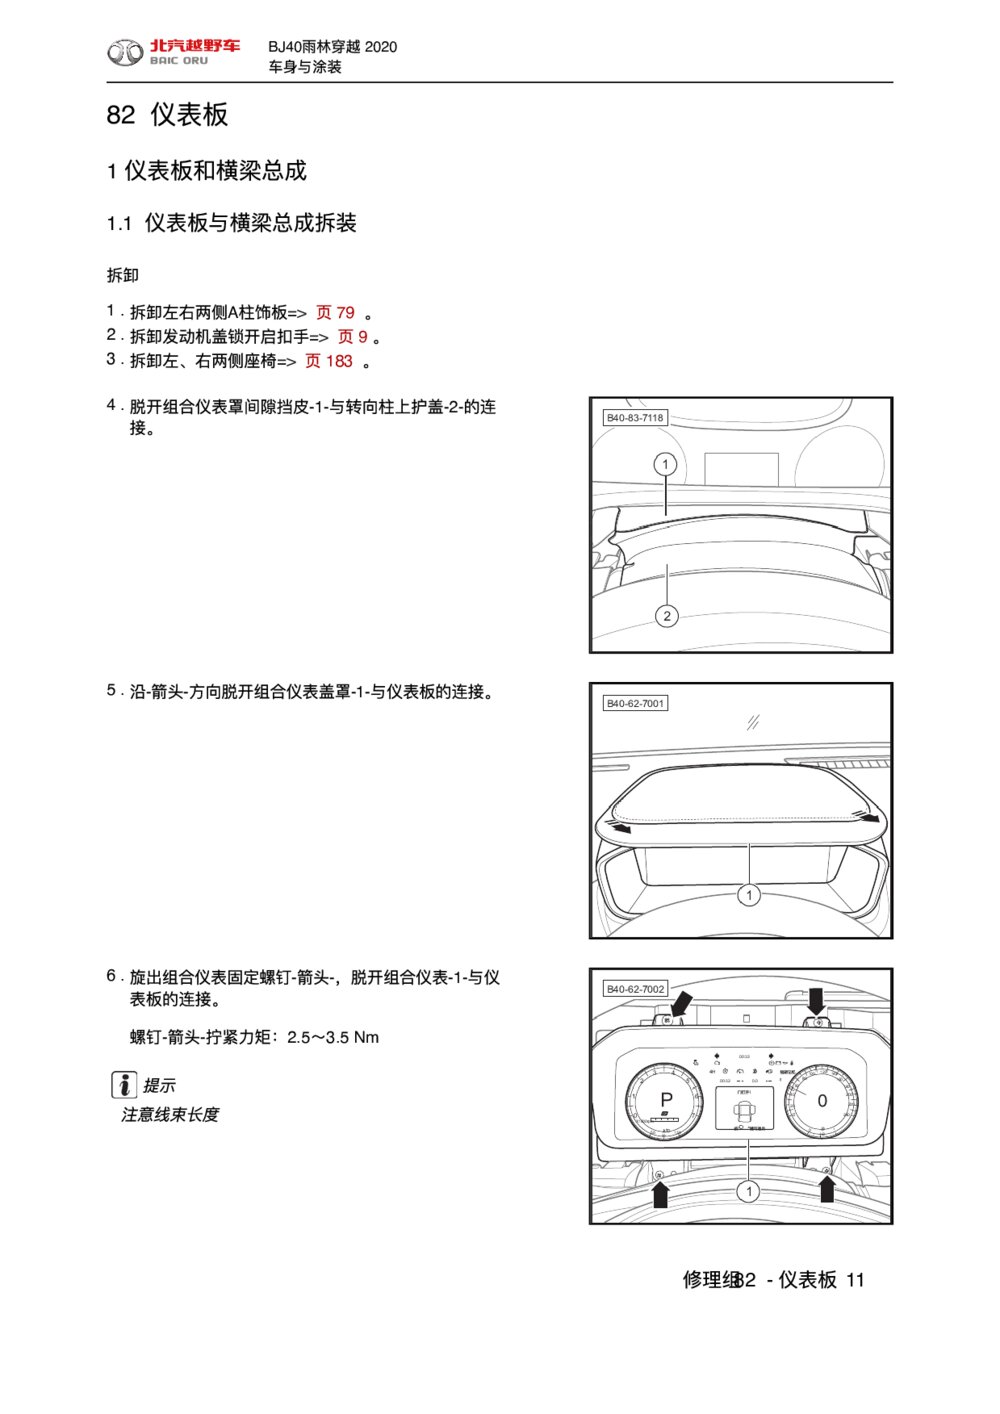 2020款北京BJ40仪表板和横梁总成拆装手册1